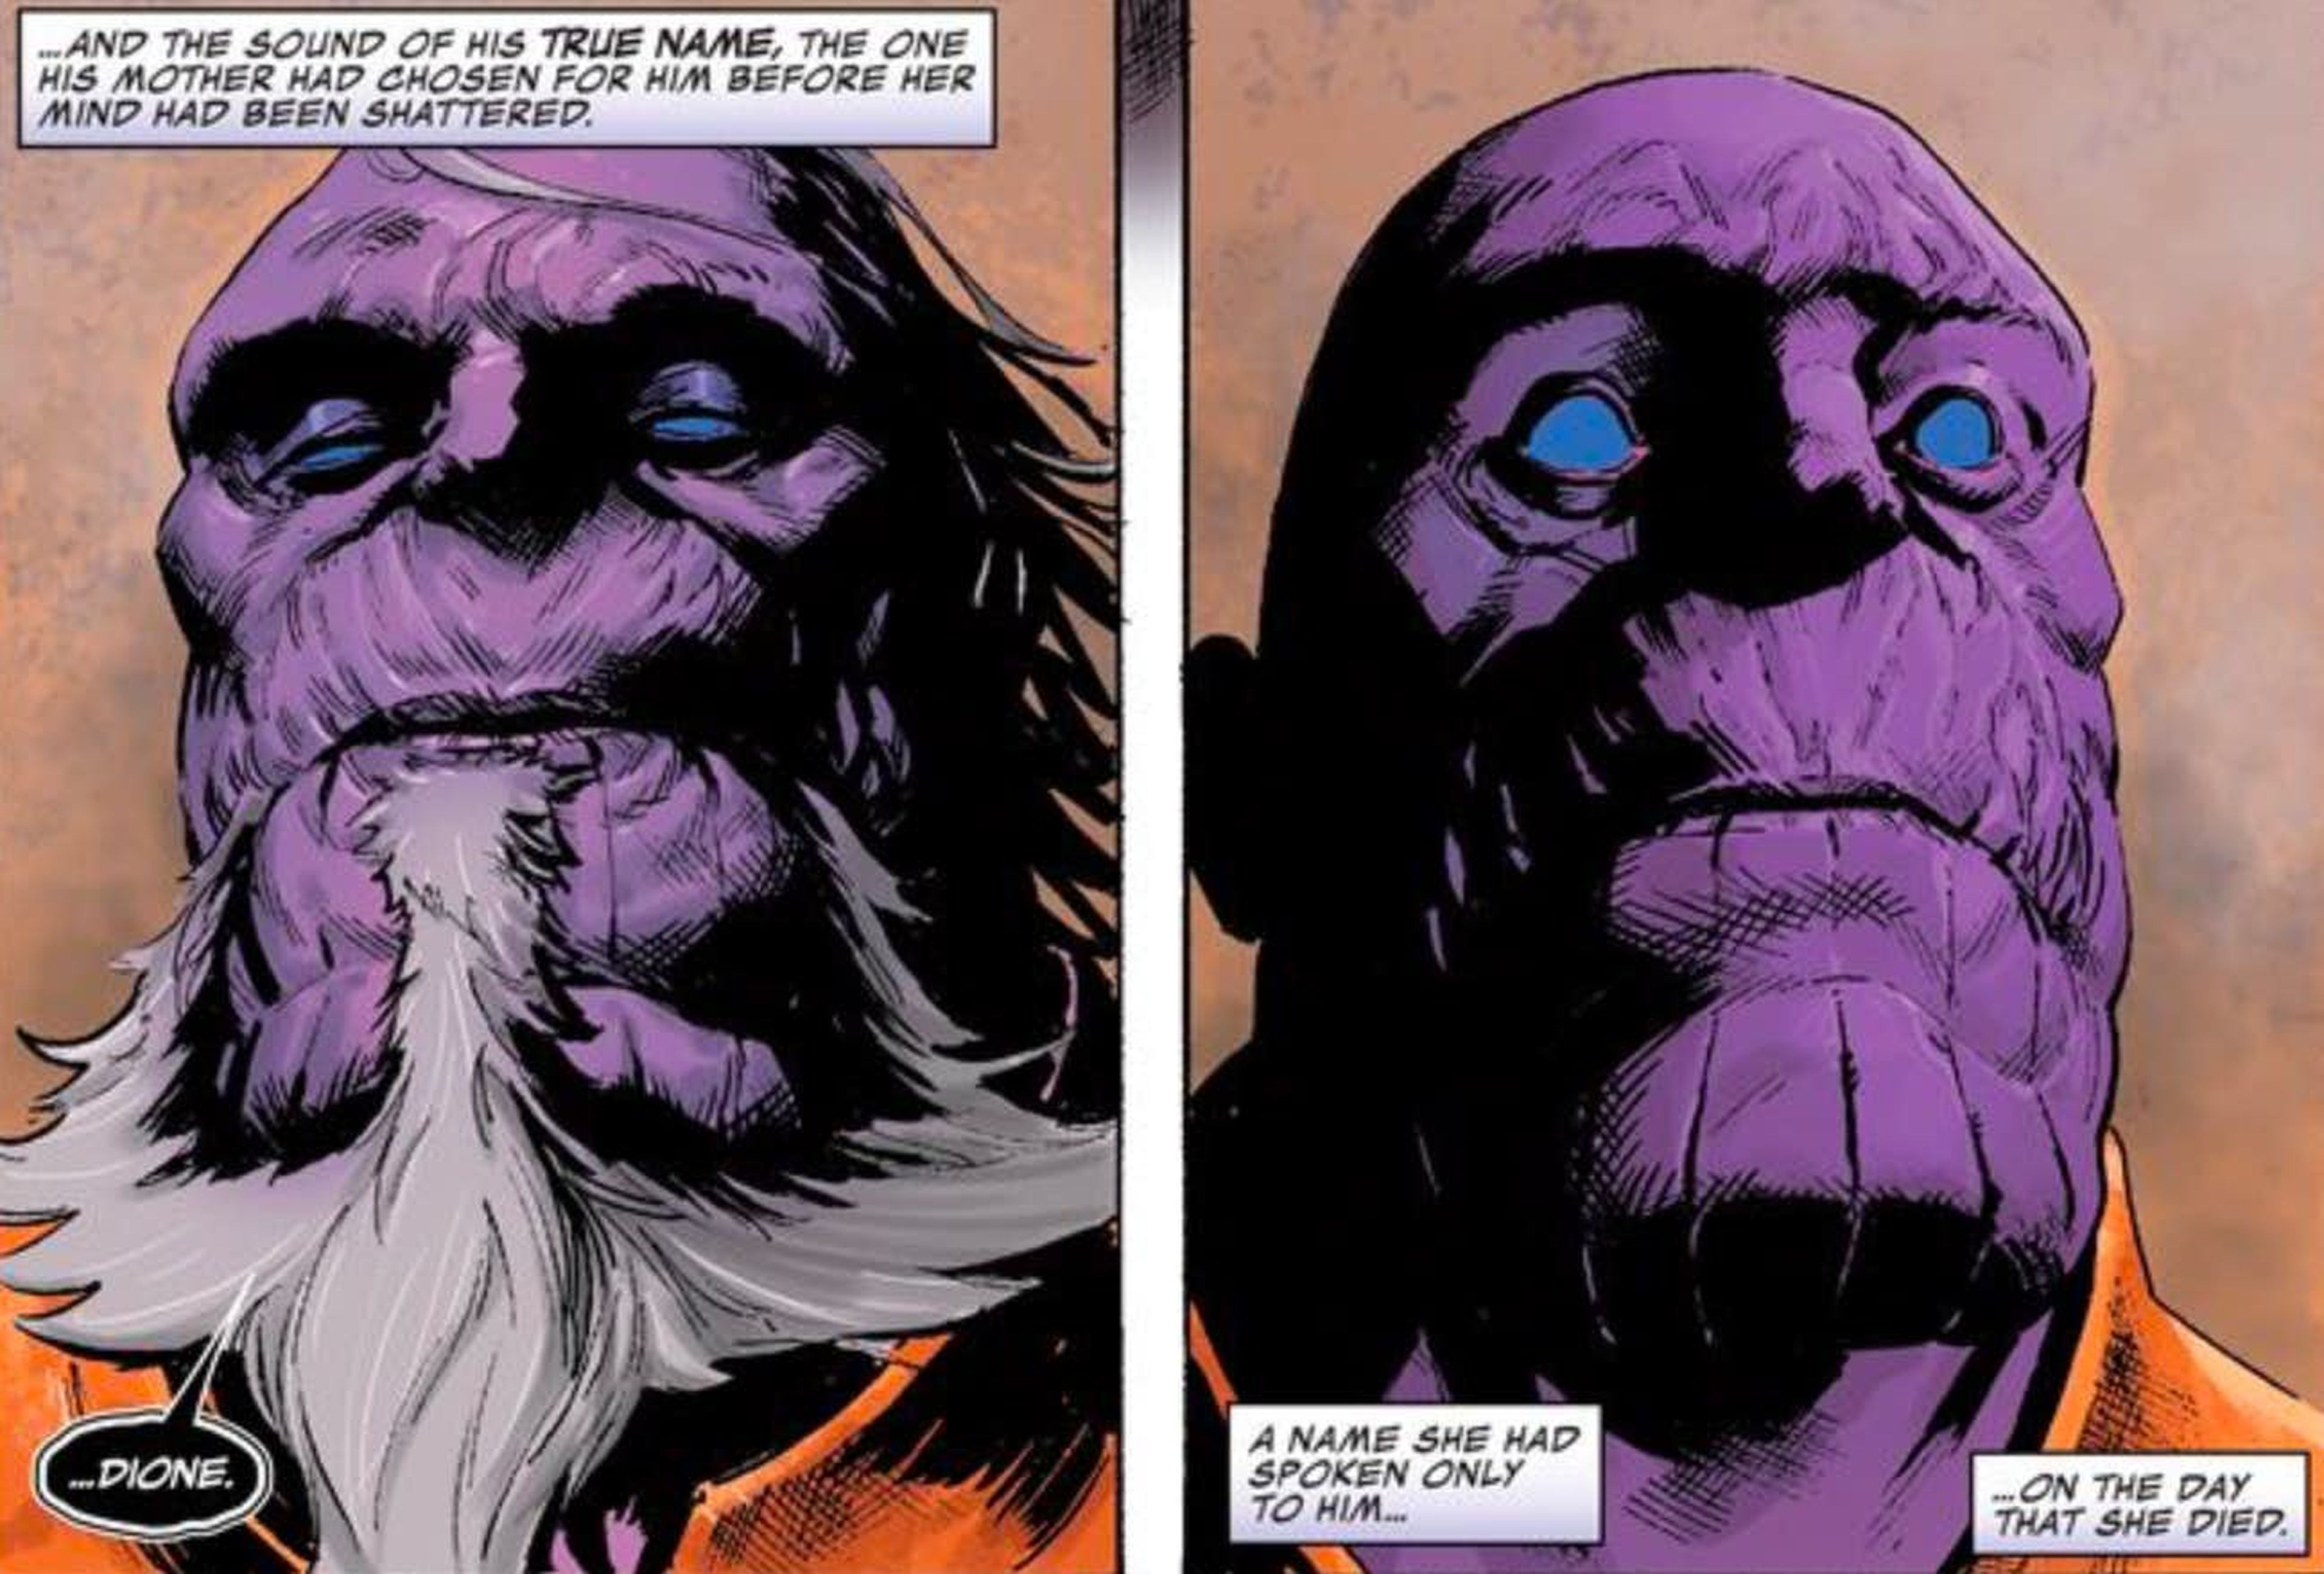 El verdadero nombre de Thanos es Dione